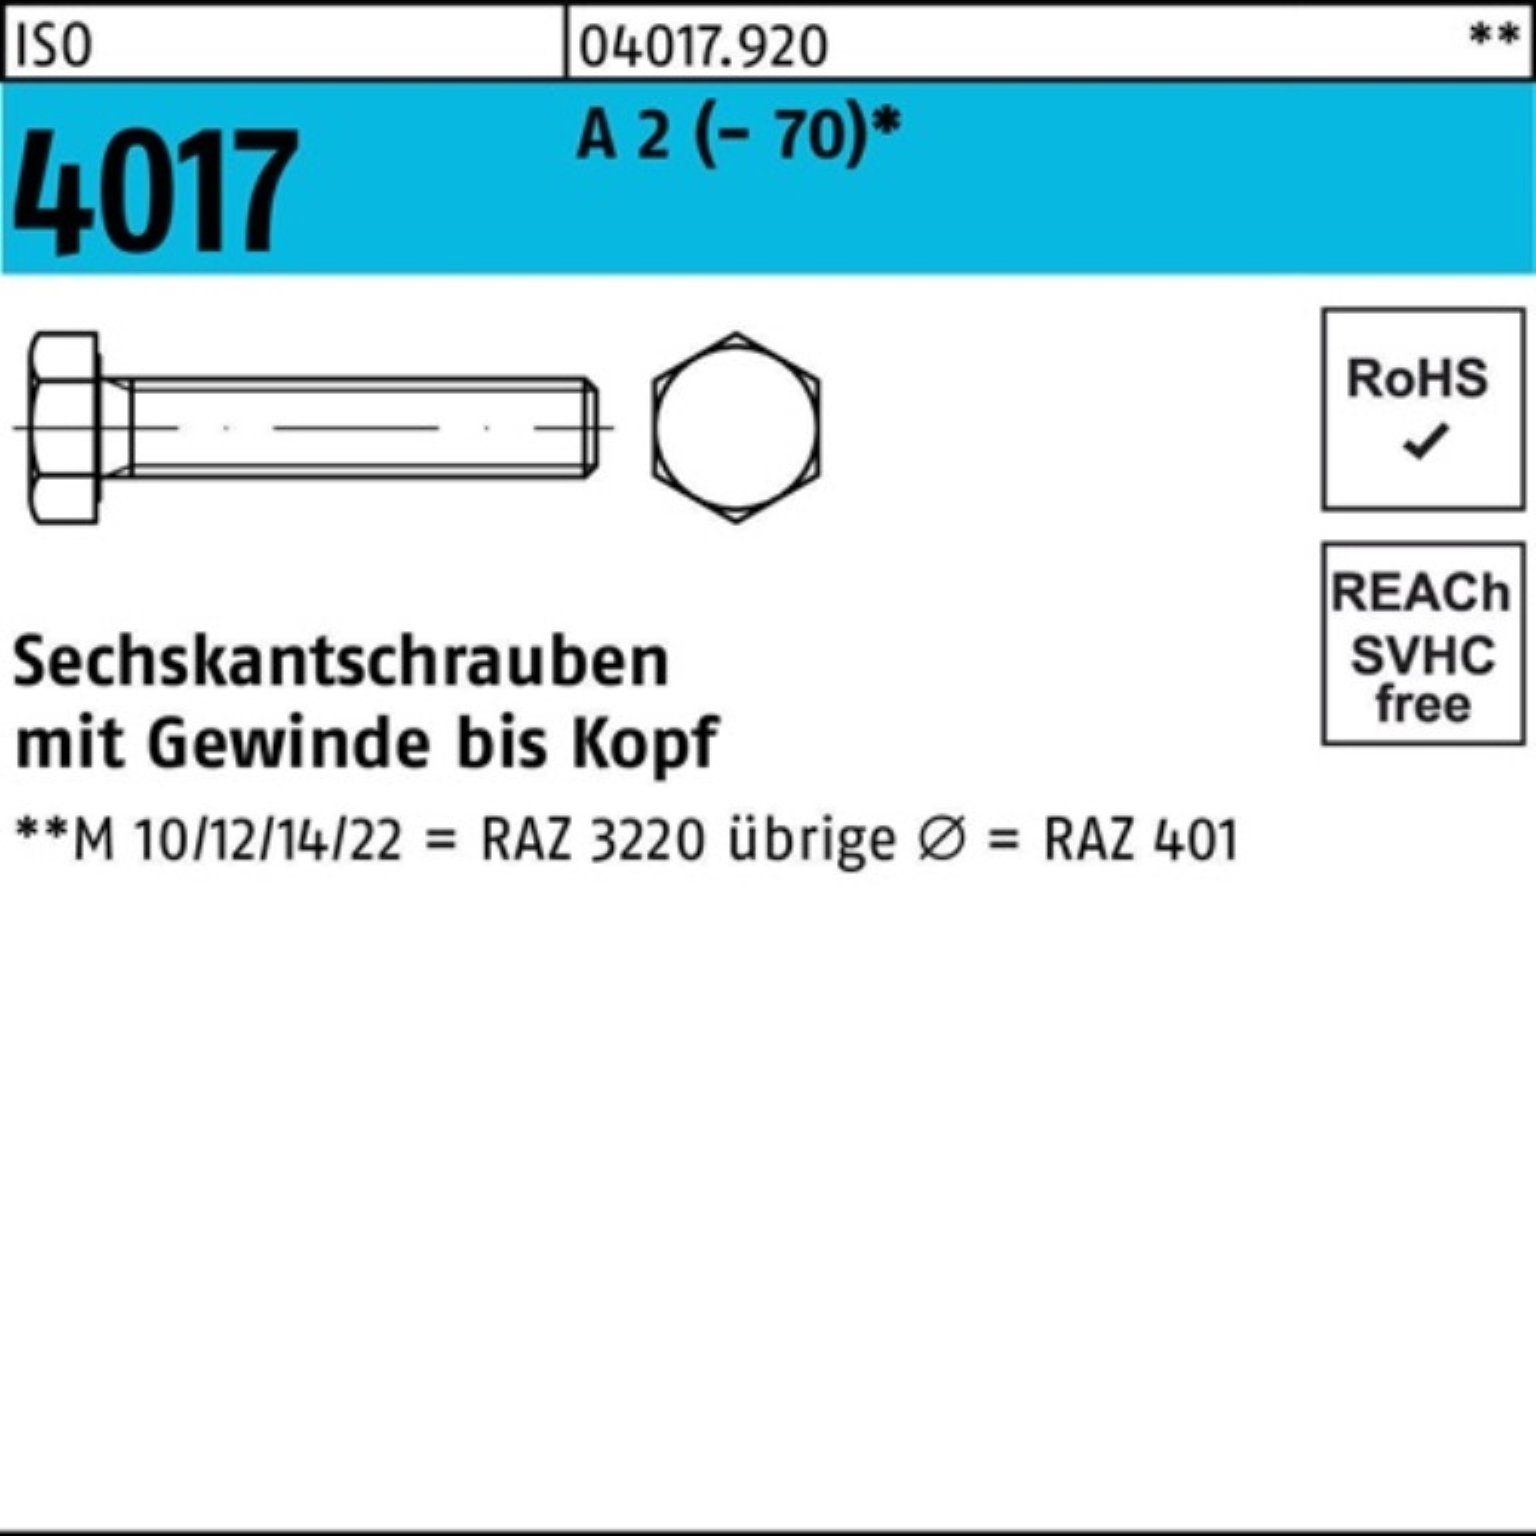 Stück ISO Sechskantschraube Sechskantschraube 2 22 VG A 100er (70) 100 Pack 4017 M4x Bufab